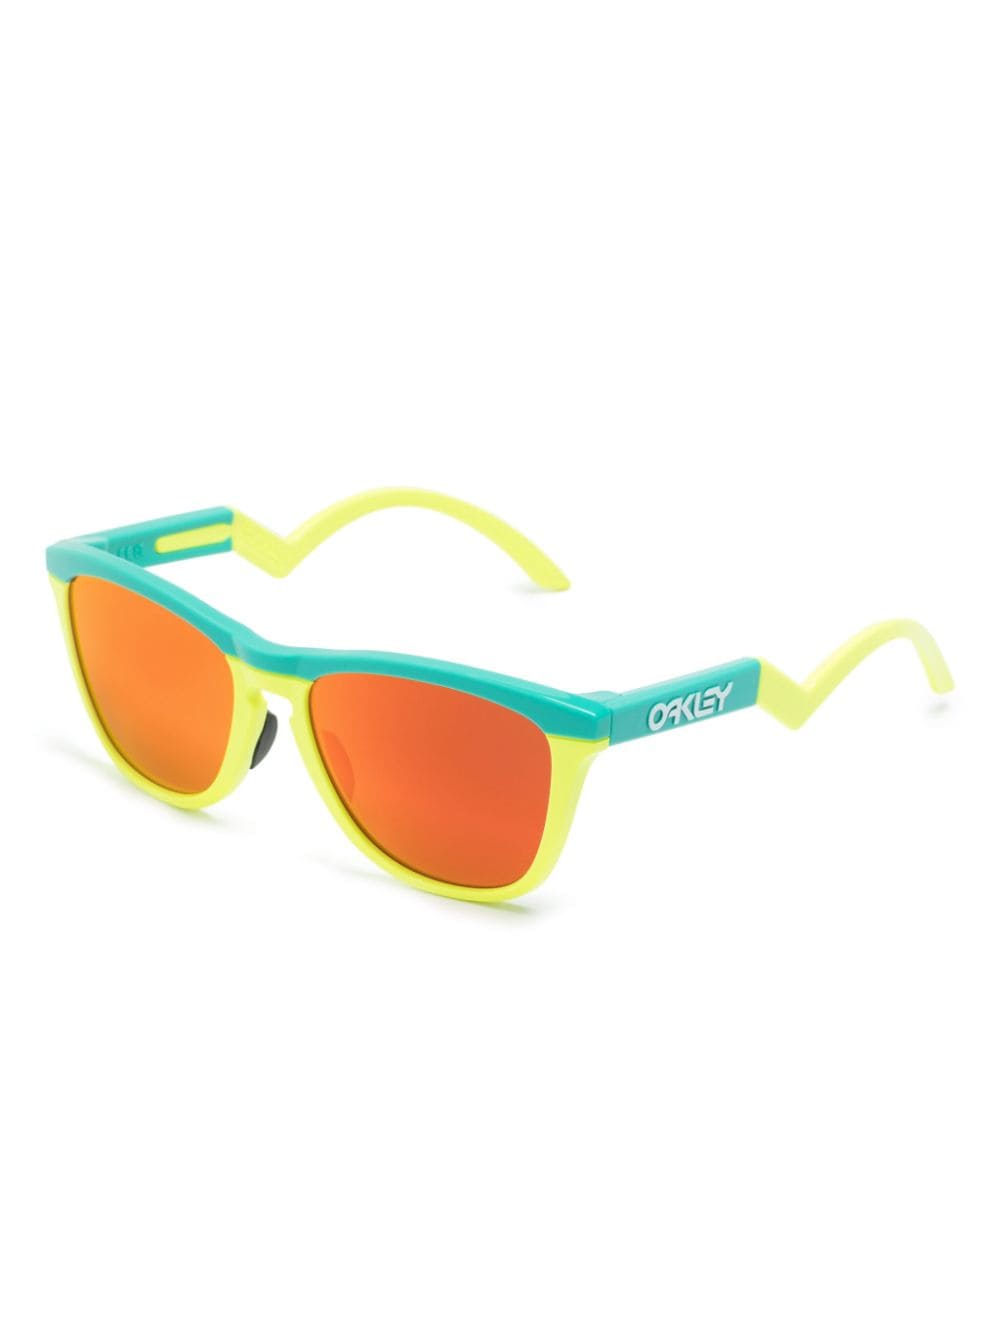 Frogskins Hybrid round-frame sunglasses<BR/><BR/>